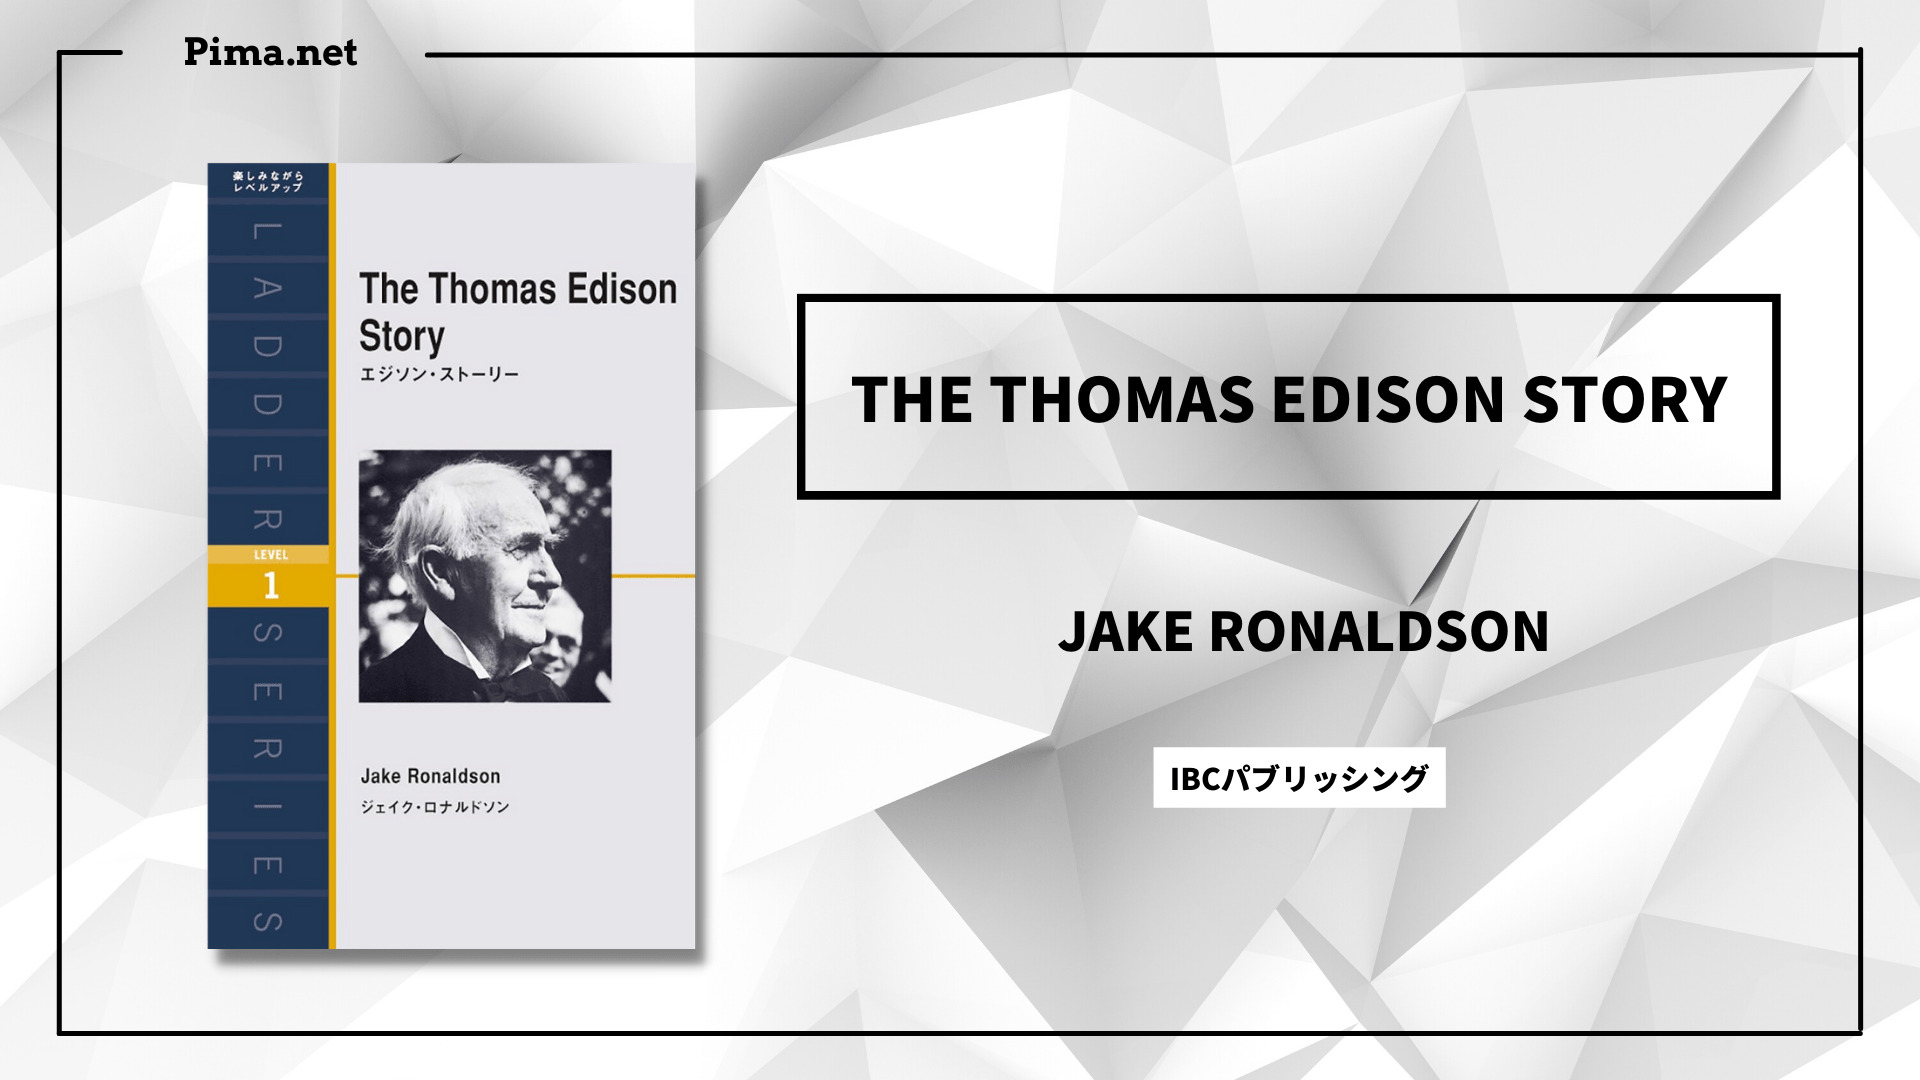 The Thomas Edison Story